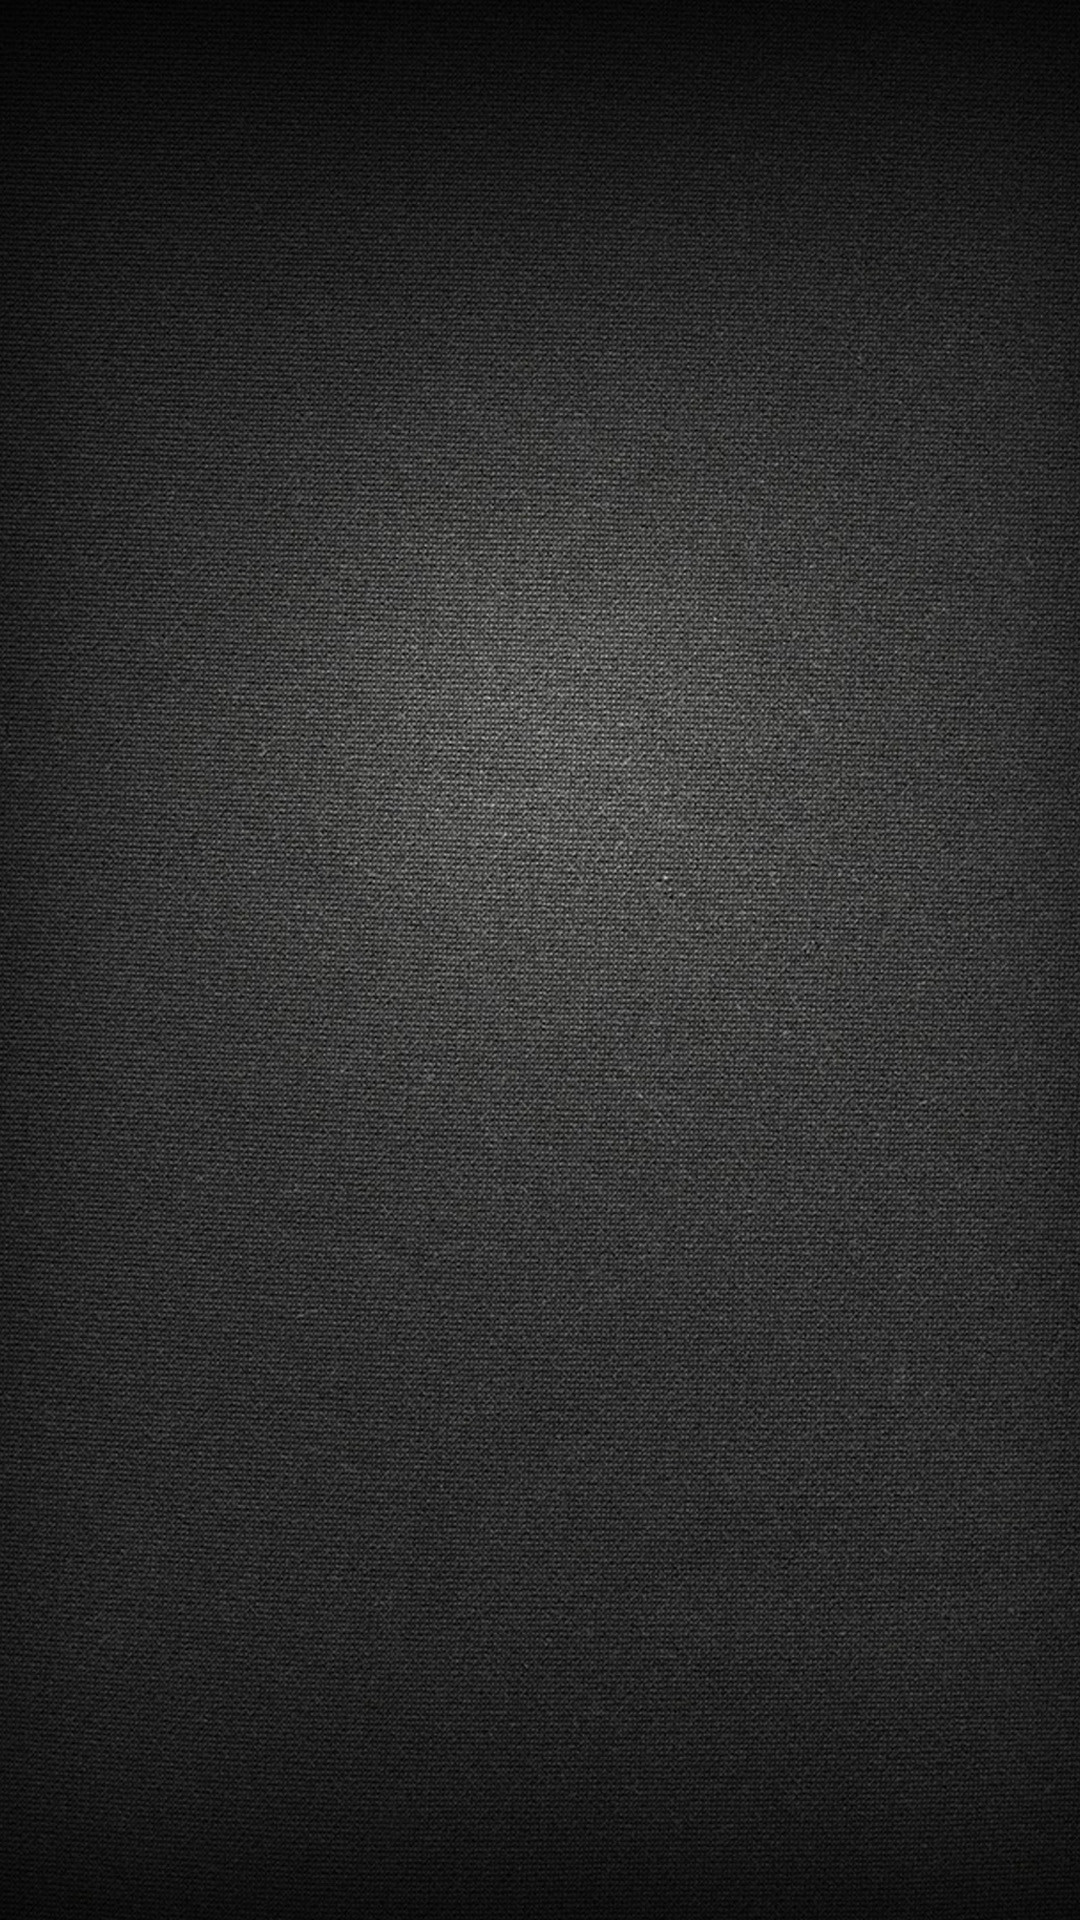 1080x1920 Download Samsung Dark Wallpaper Gallery